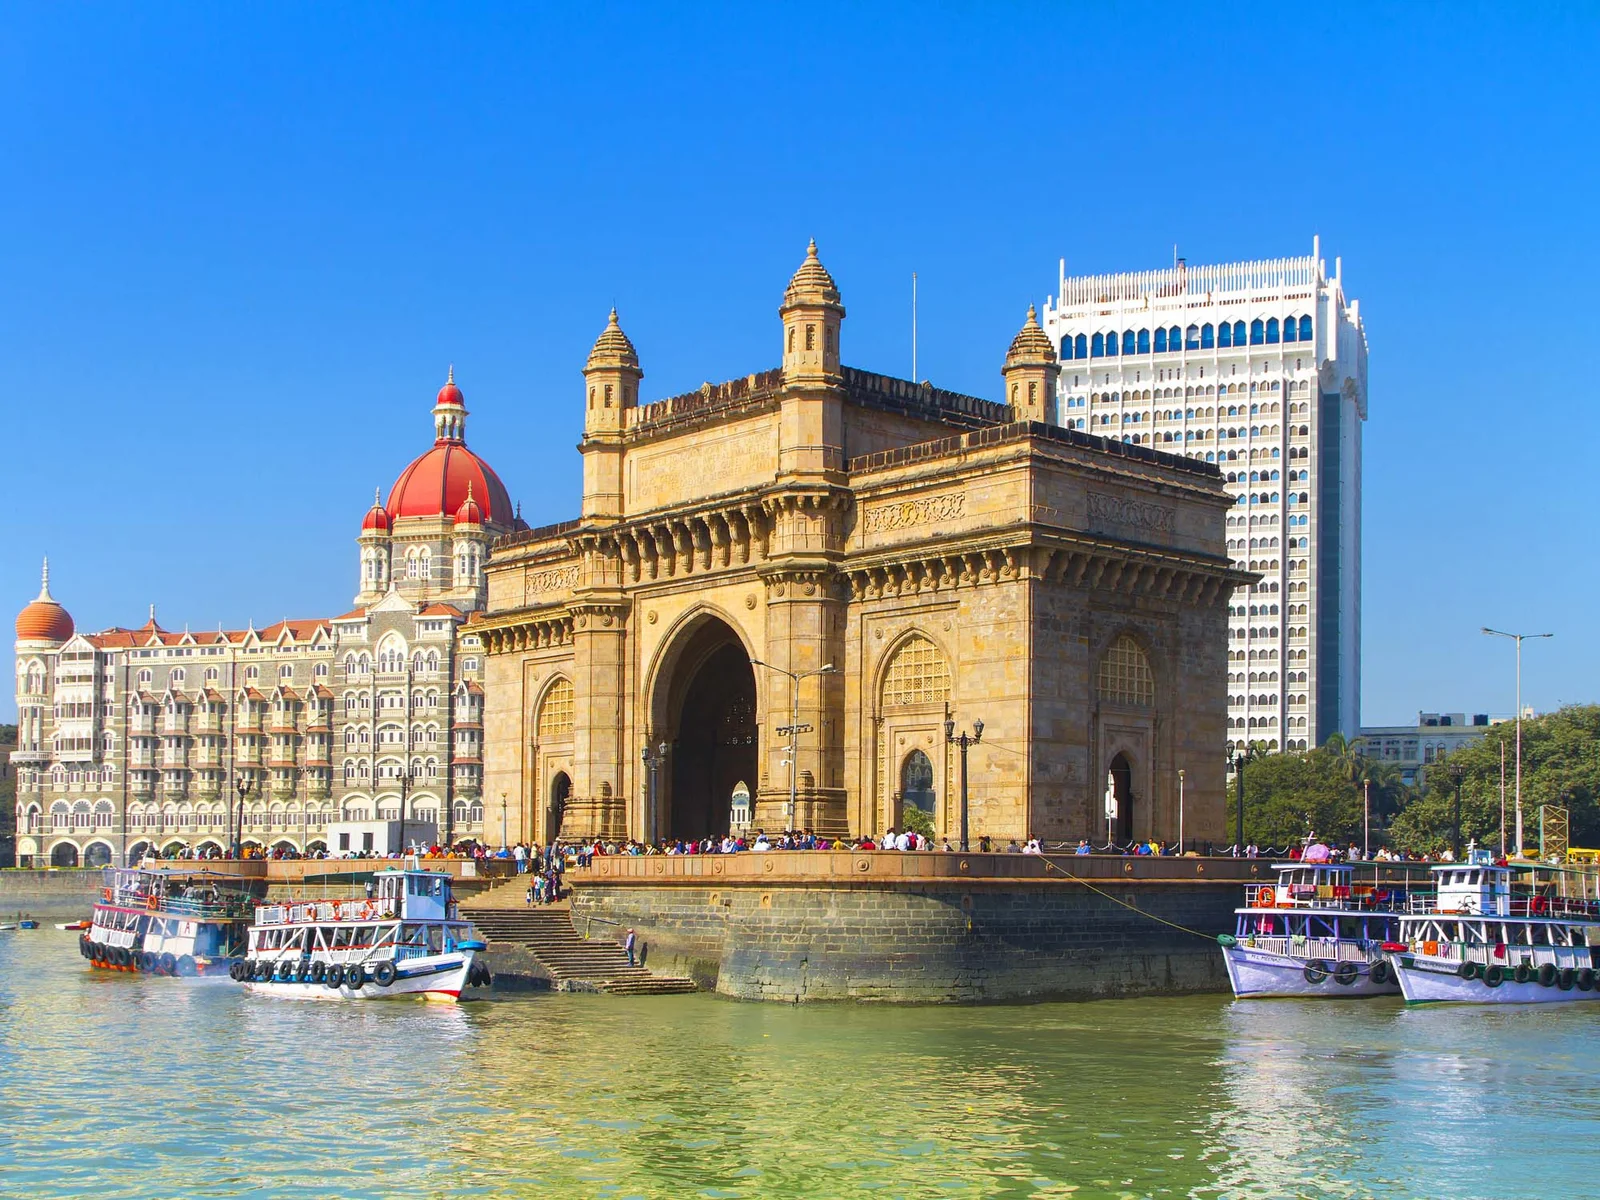 Gateway-of-india-Mumbai-India